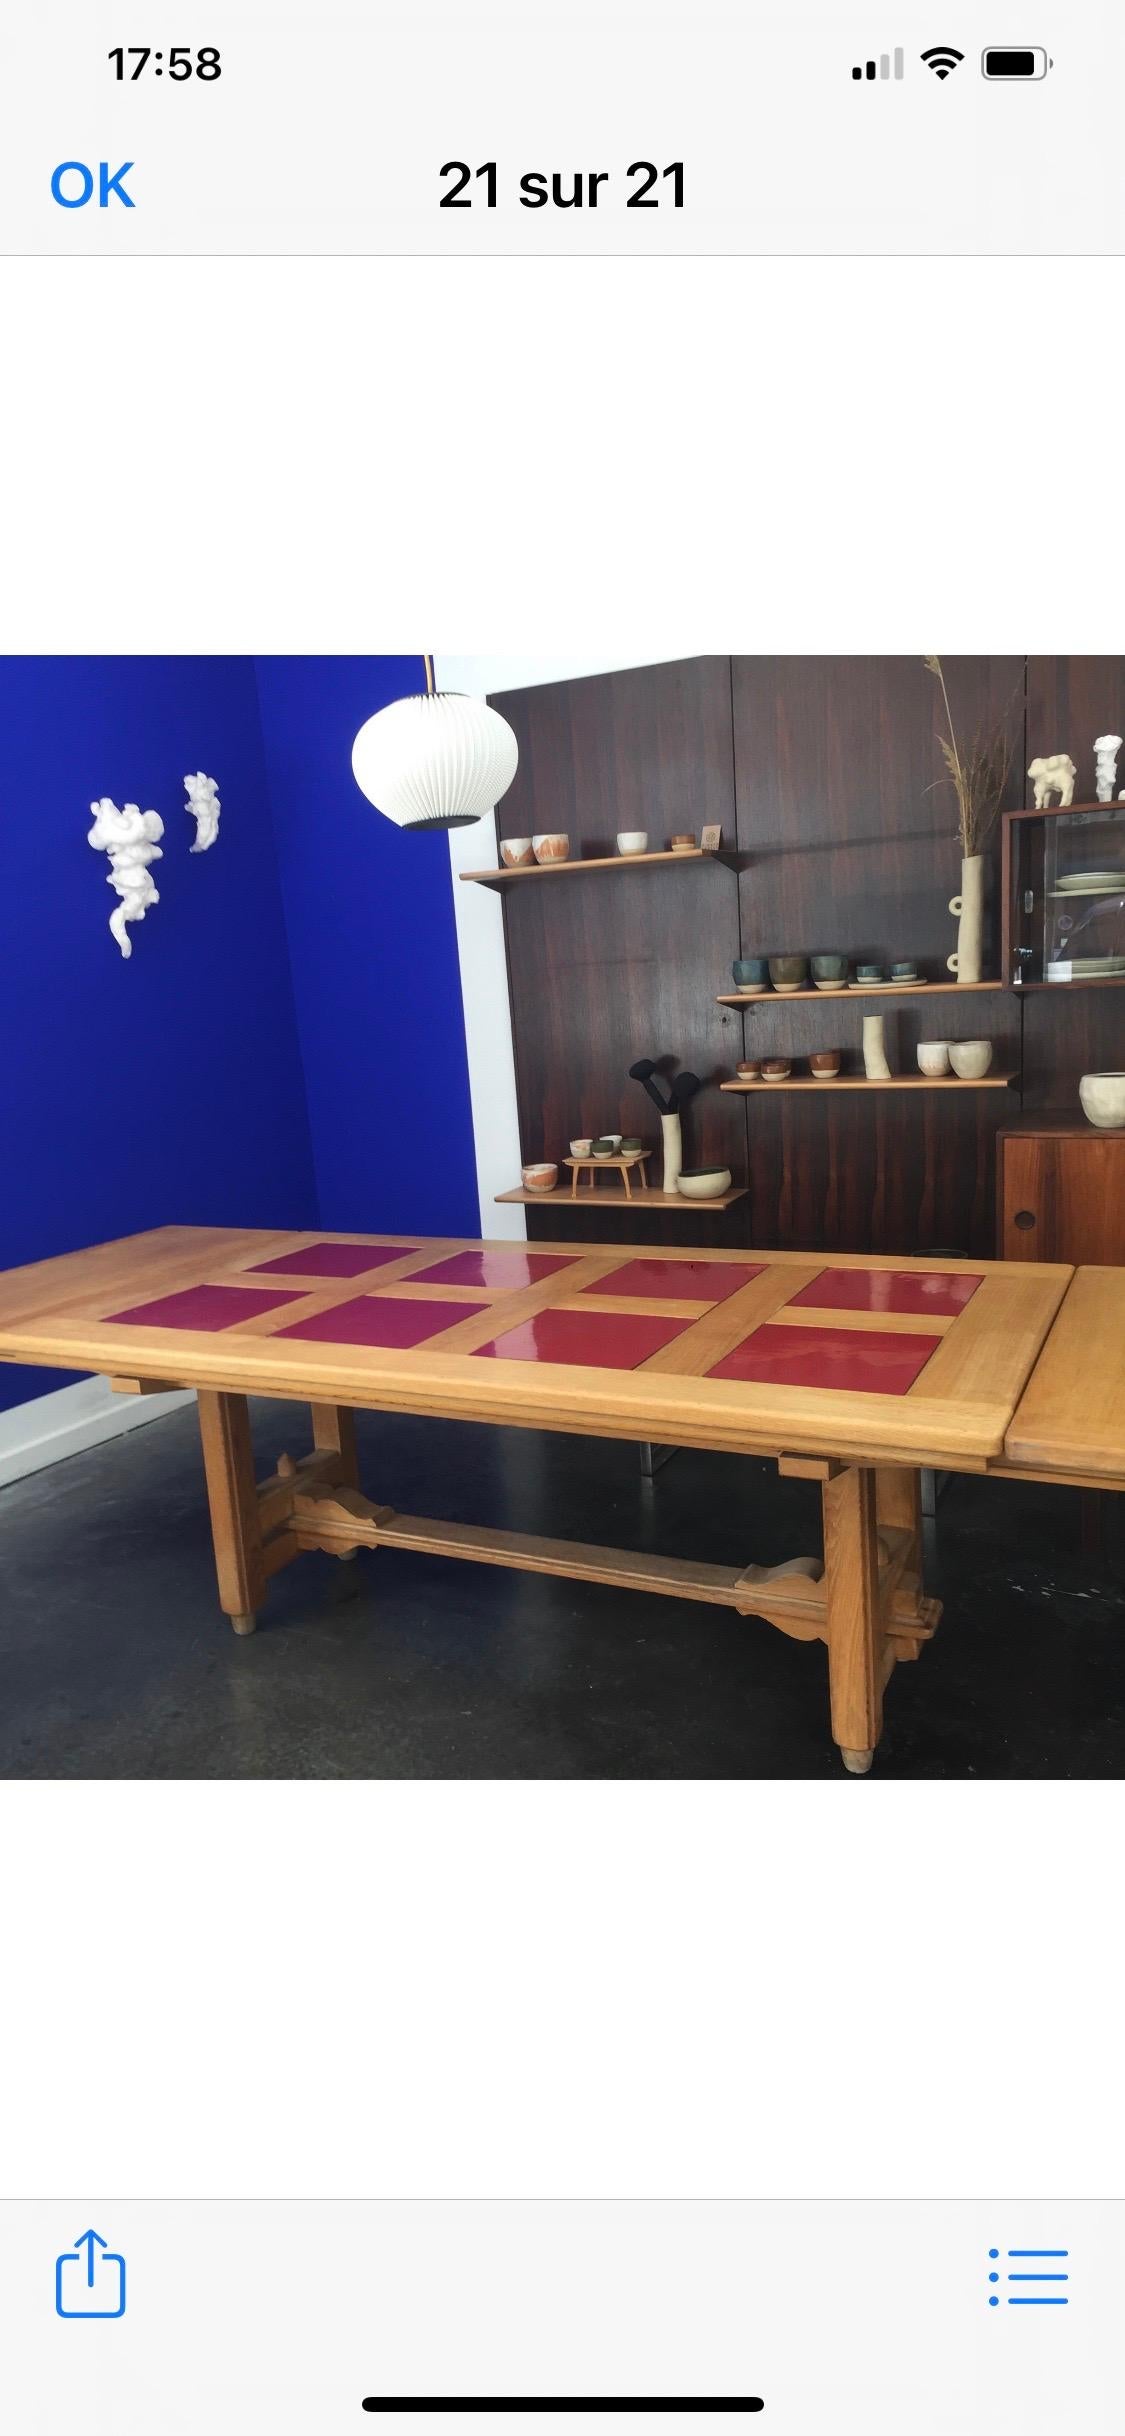 Ausziehbarer Esstisch von Guillerme et Chambron. Auf der Haupt rechteckigen Tischplatte 8 quadratische Farbe kann rot oder weiß geändert werden
Der Tisch ist 185 cm lang und hat zwei Blätter von je 50 cm, also 285 cm offen.